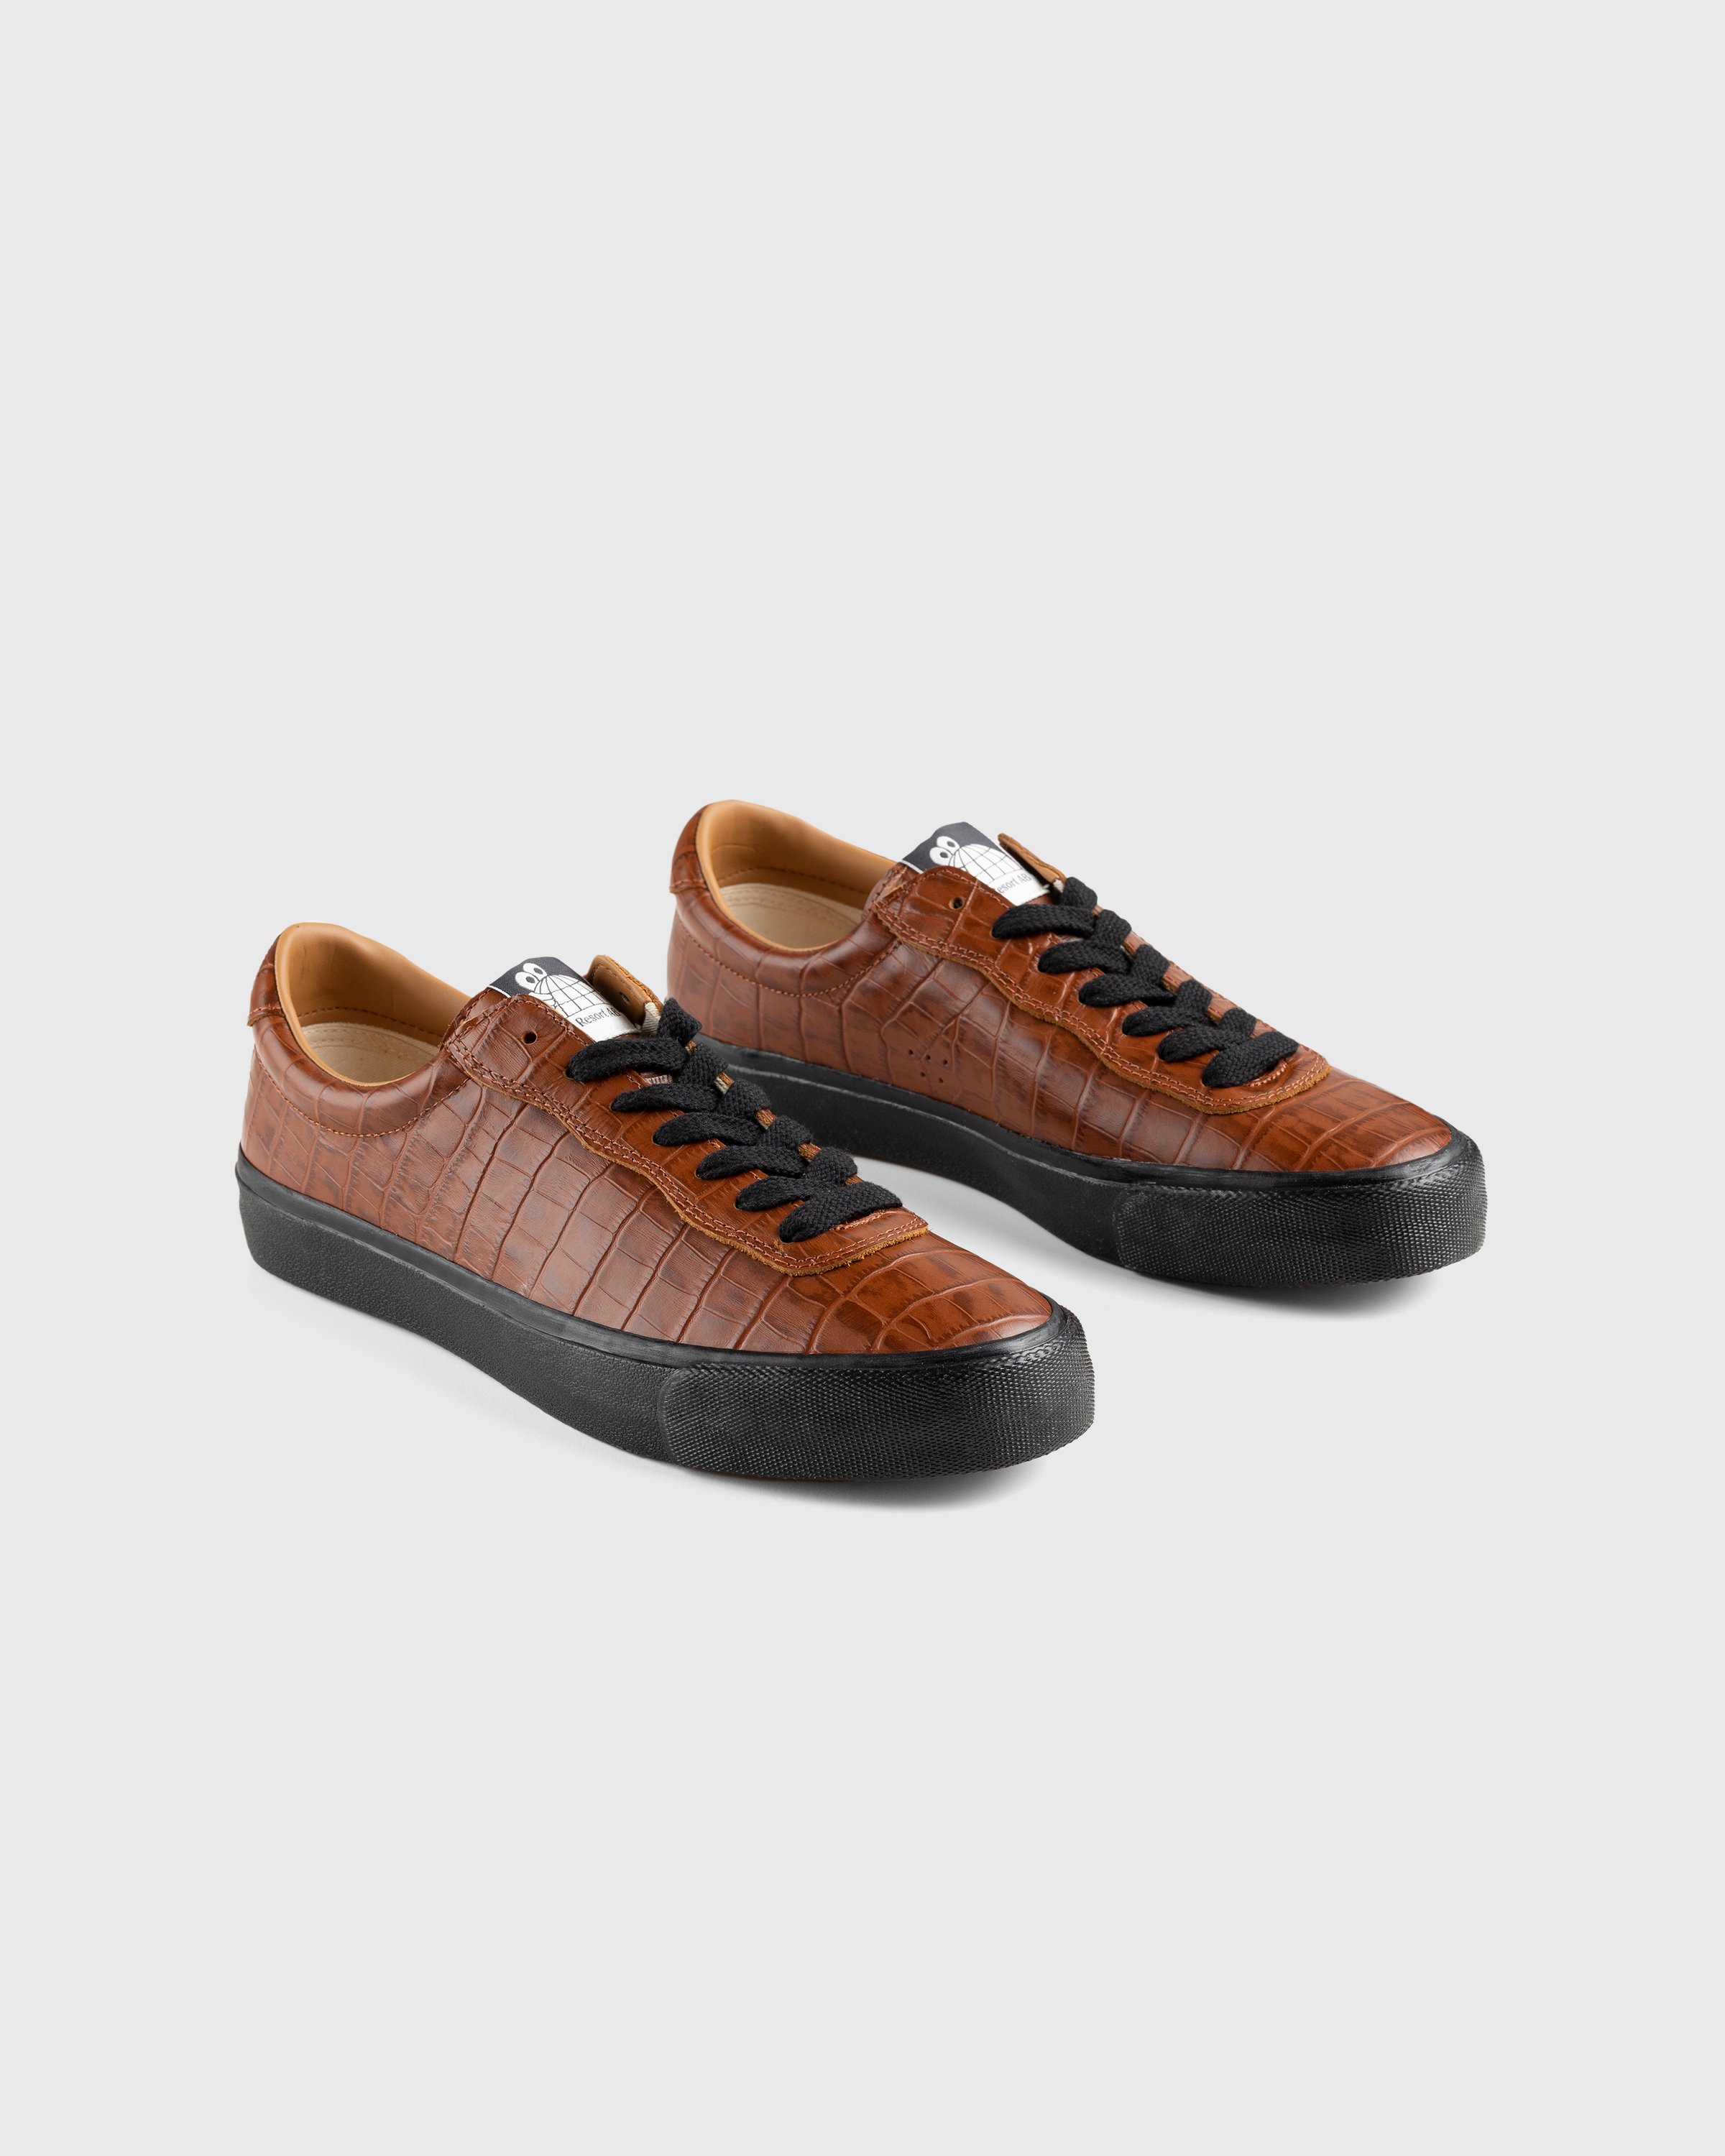 Last Resort AB - VM001 Croc Lo Brown/Black - Footwear - Brown - Image 4